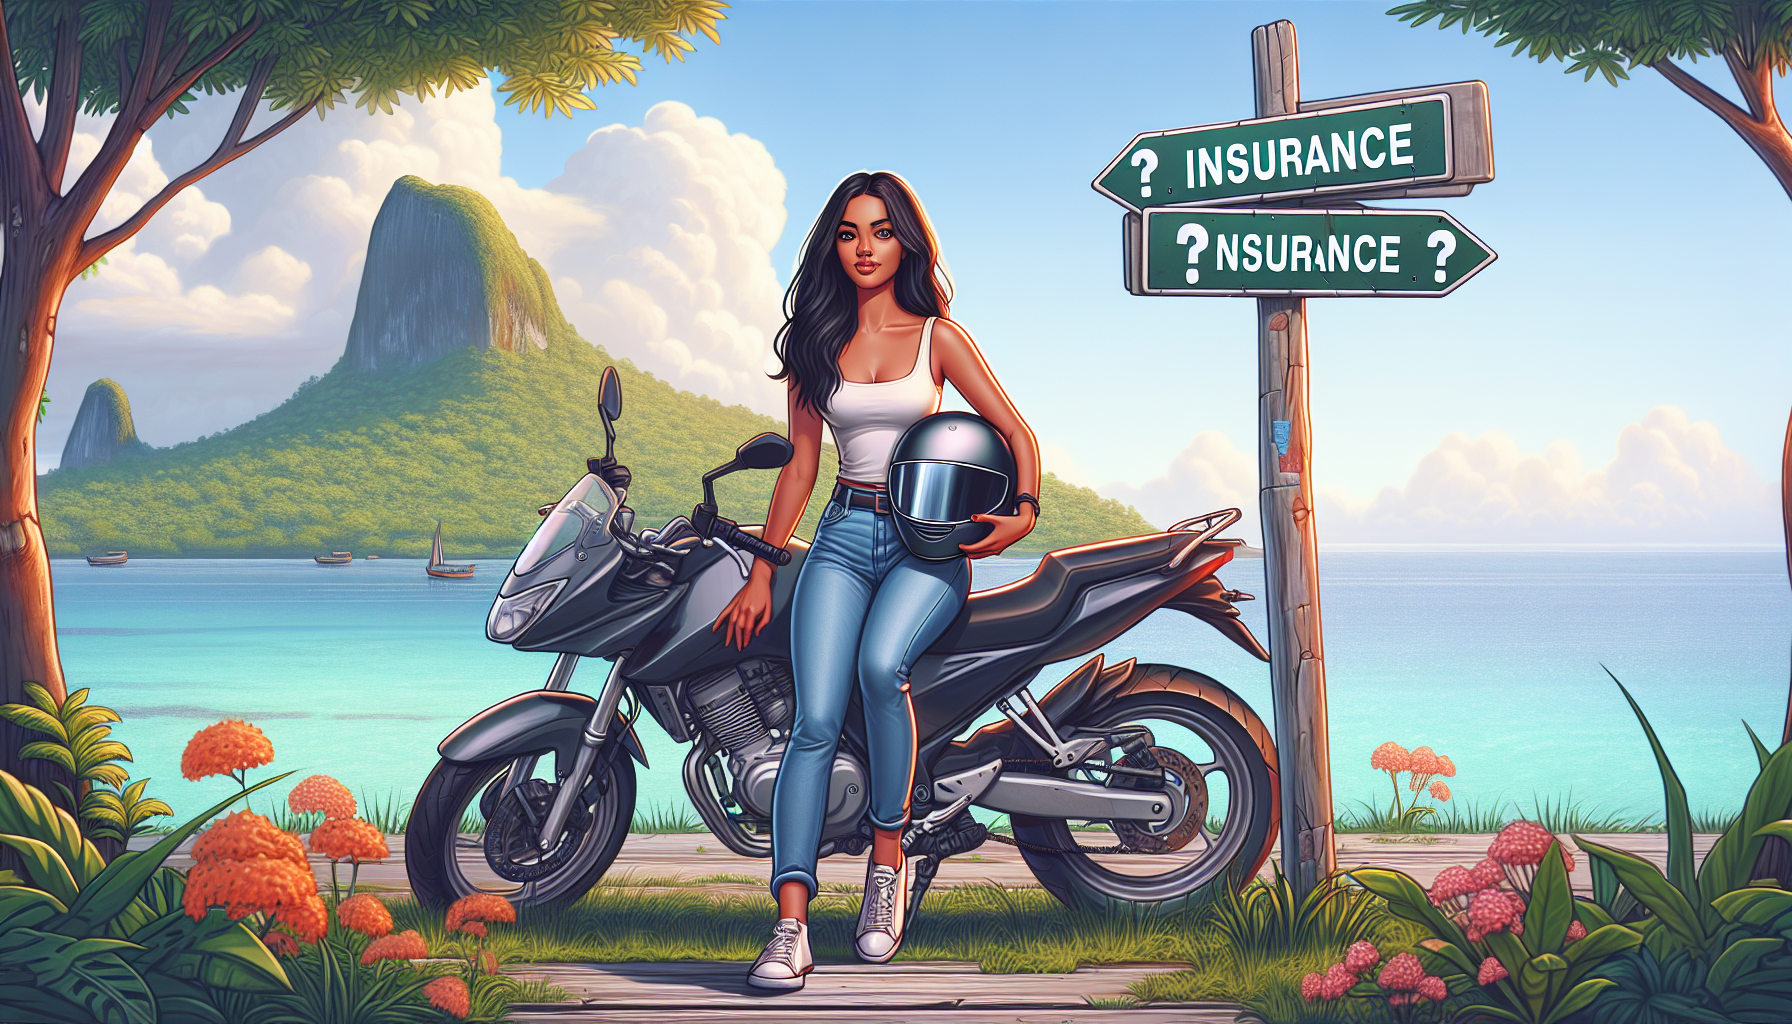 découvrez nos conseils pour choisir votre assurance moto à la réunion. trouvez la meilleure assurance moto 974 pour vous protéger sur les routes de l'île.